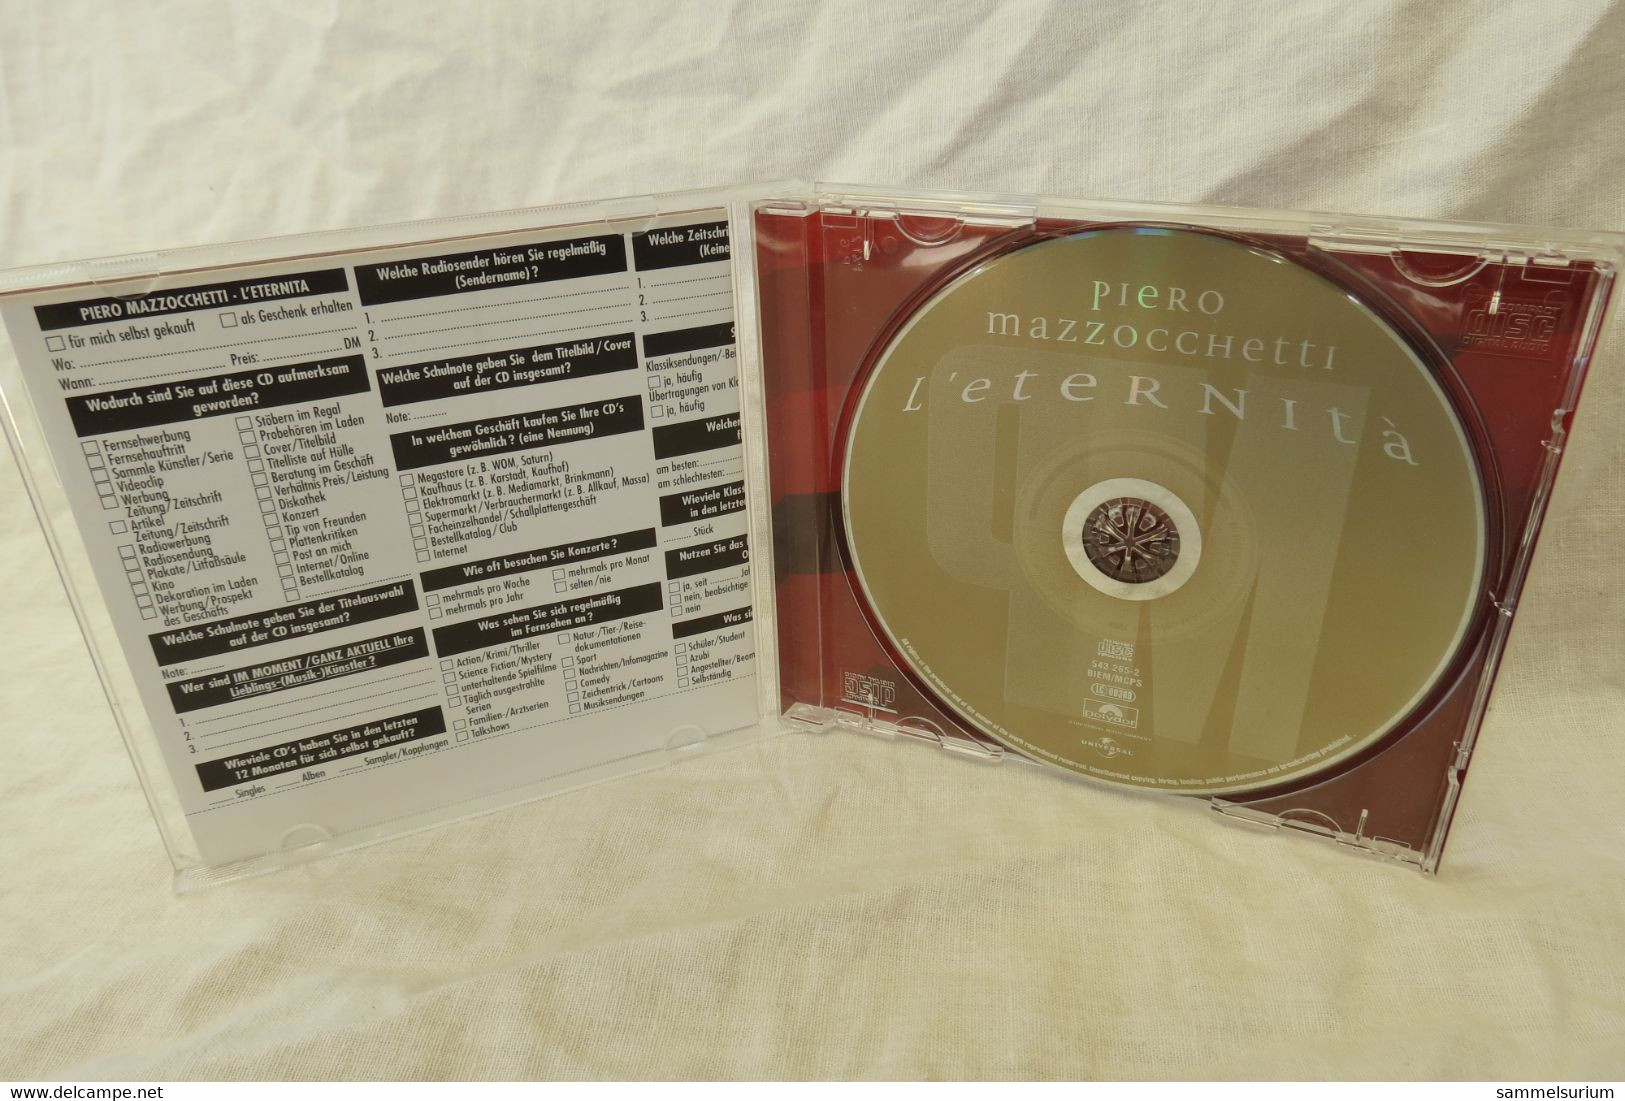 CD Piero Mazzocchetti "L'eternità" - Otros - Canción Italiana